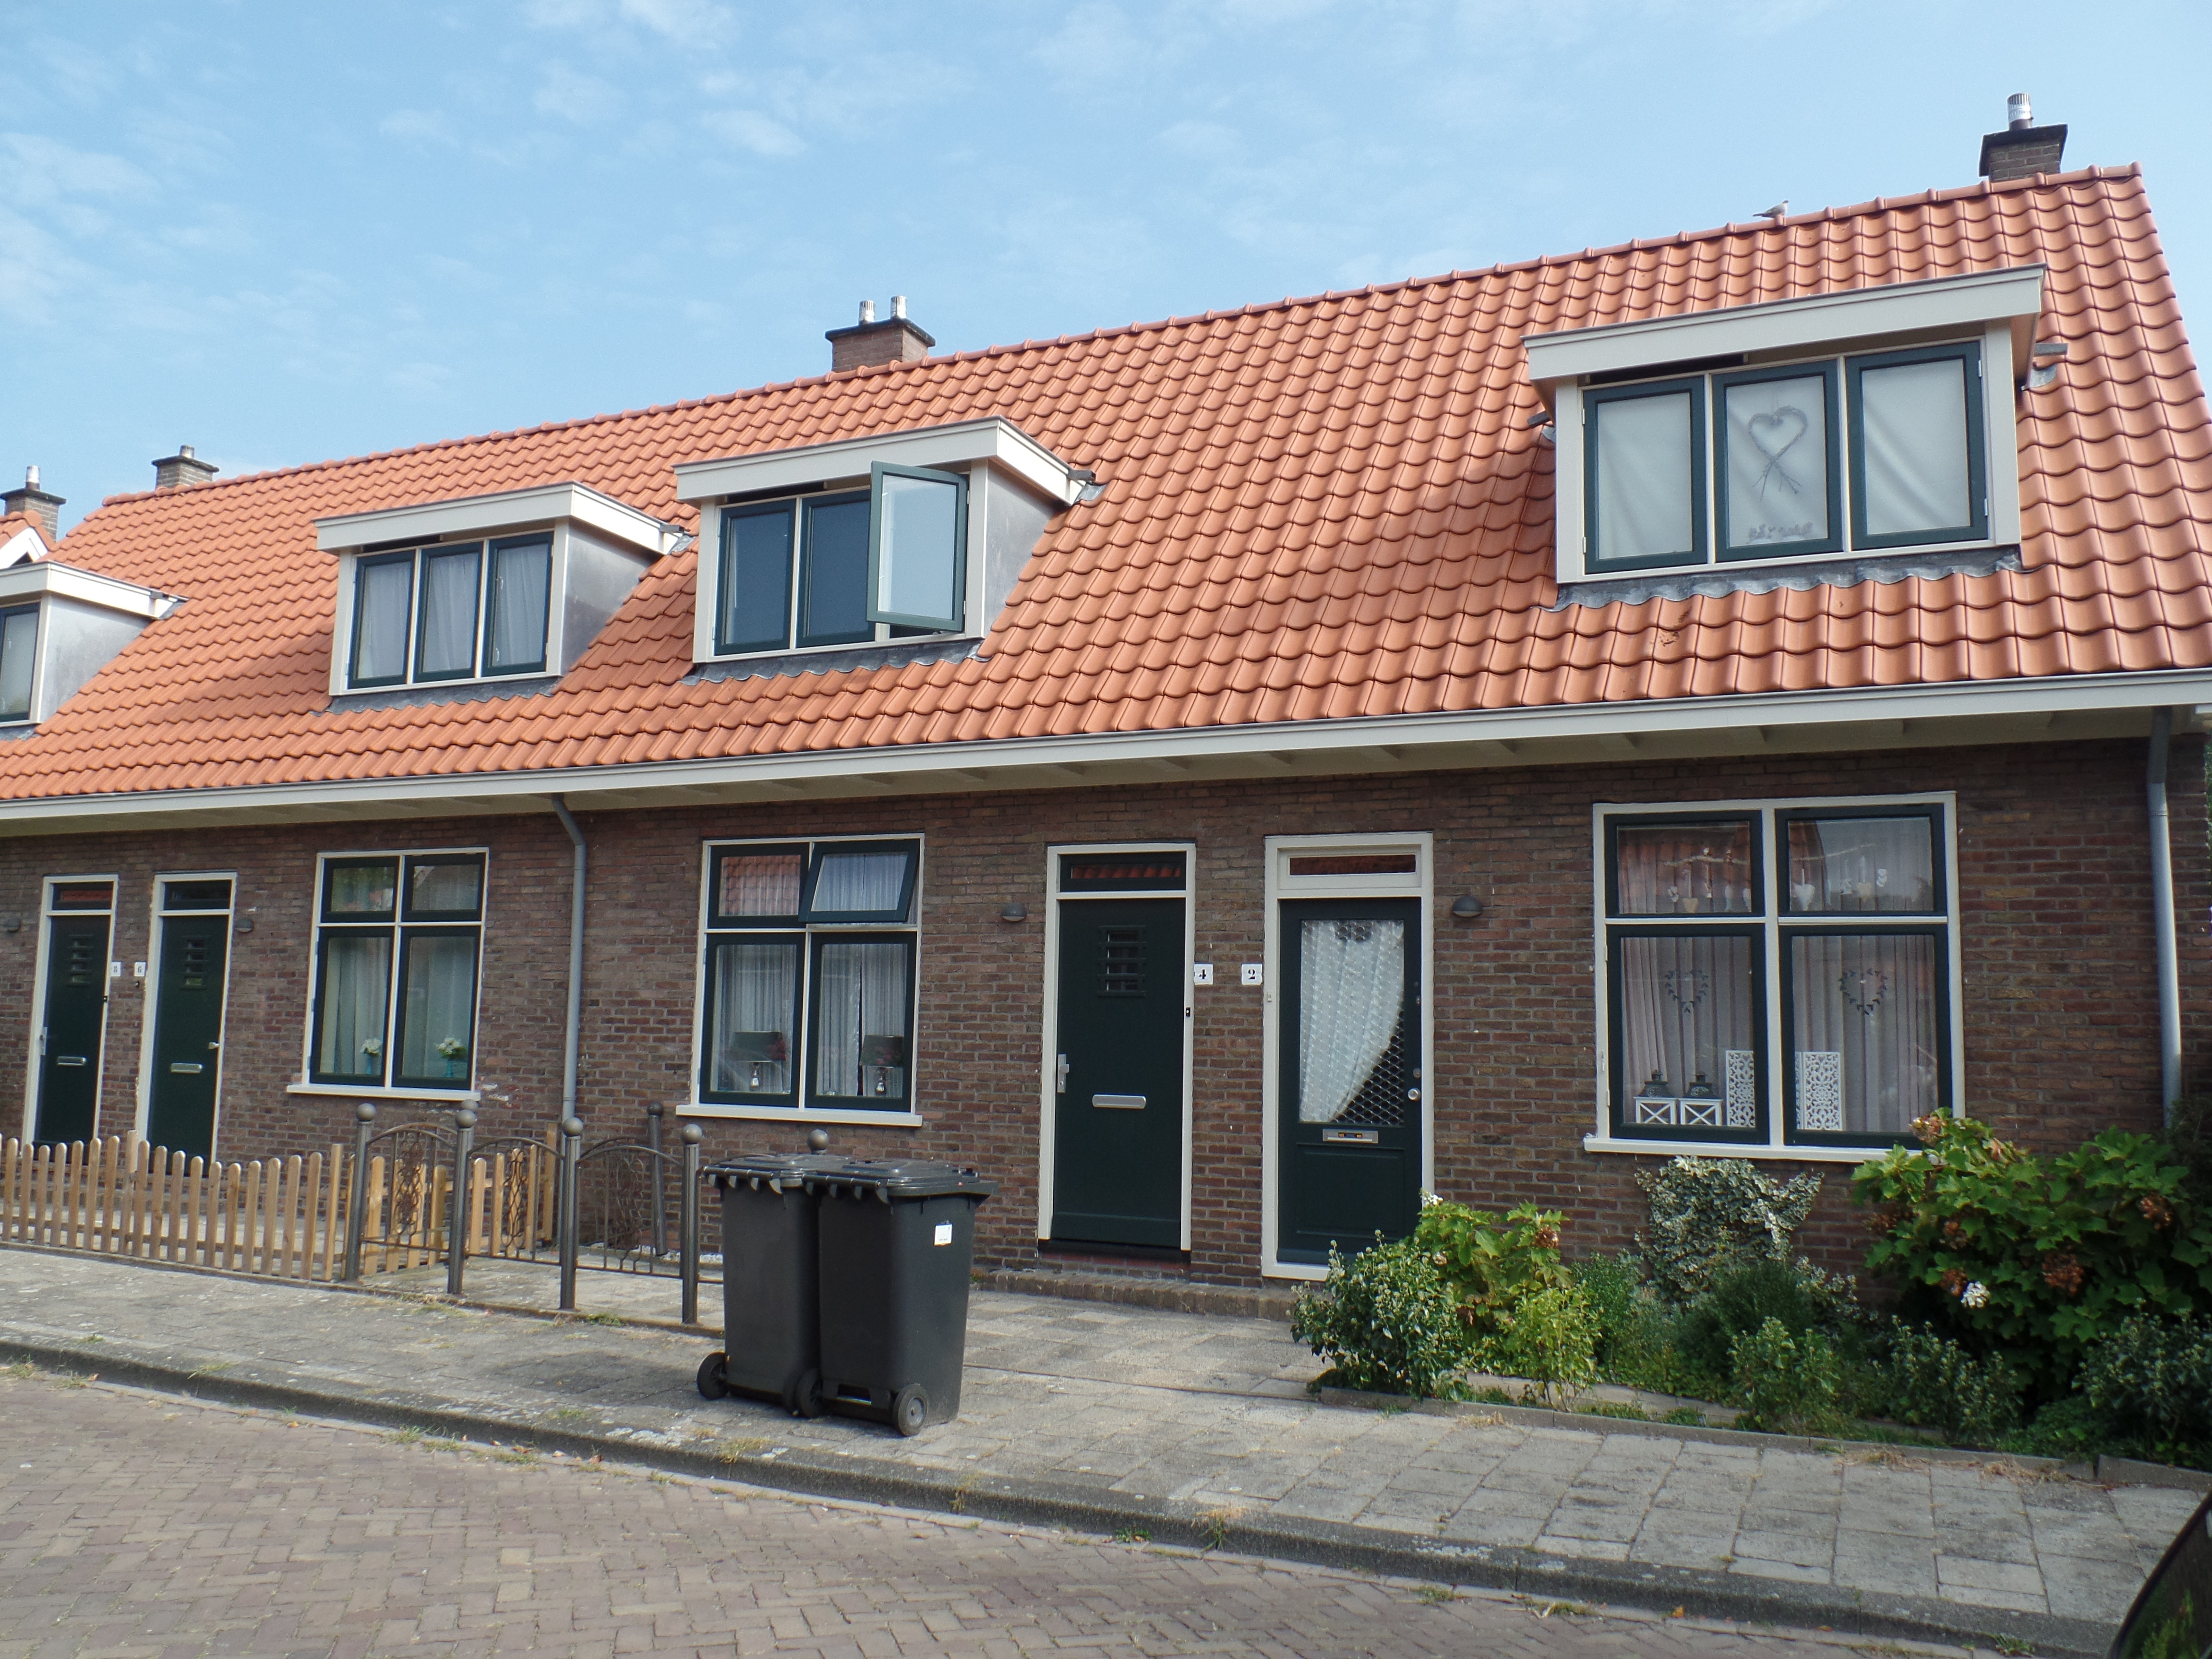 Herman Costerstraat 6, 2242 XL Wassenaar, Nederland